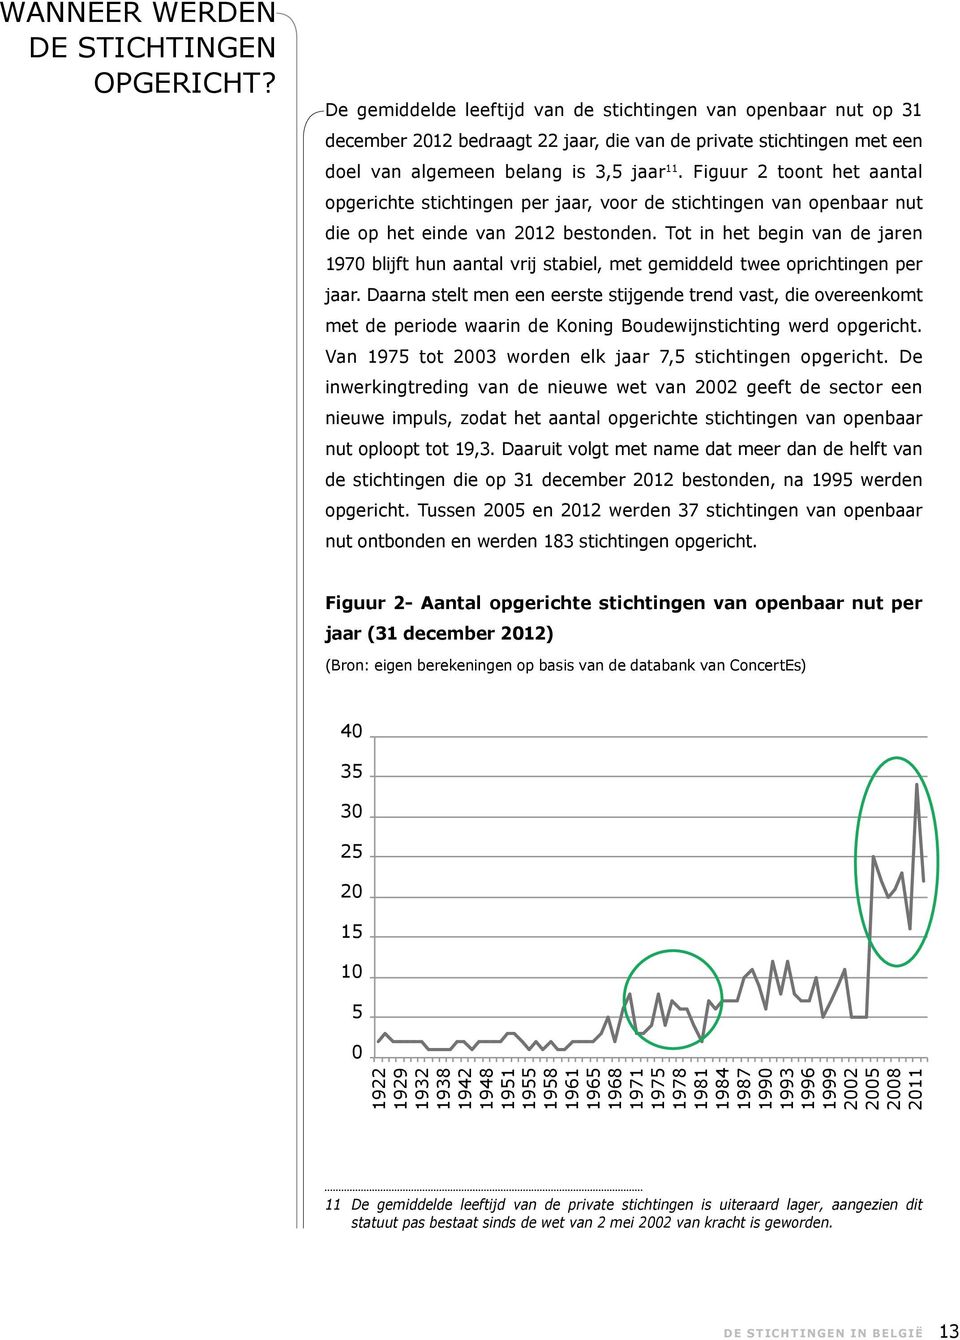 Figuur 2 toont het aantal opgerichte stichtingen per jaar, voor de stichtingen van openbaar nut die op het einde van 2012 bestonden.